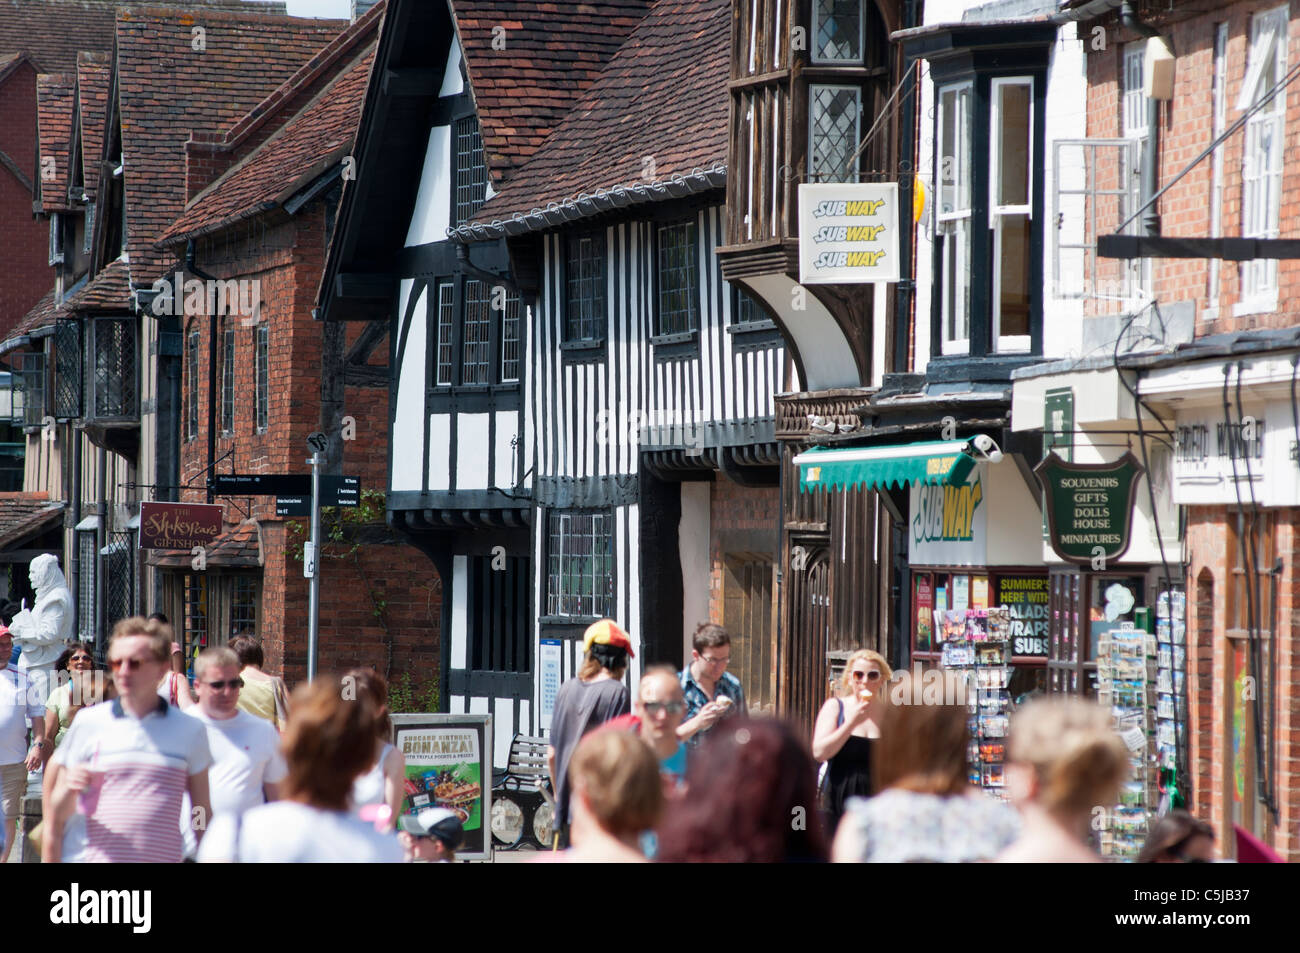 Henley Street in Stratford upon Avon, Warwickshire, England. Stock Photo